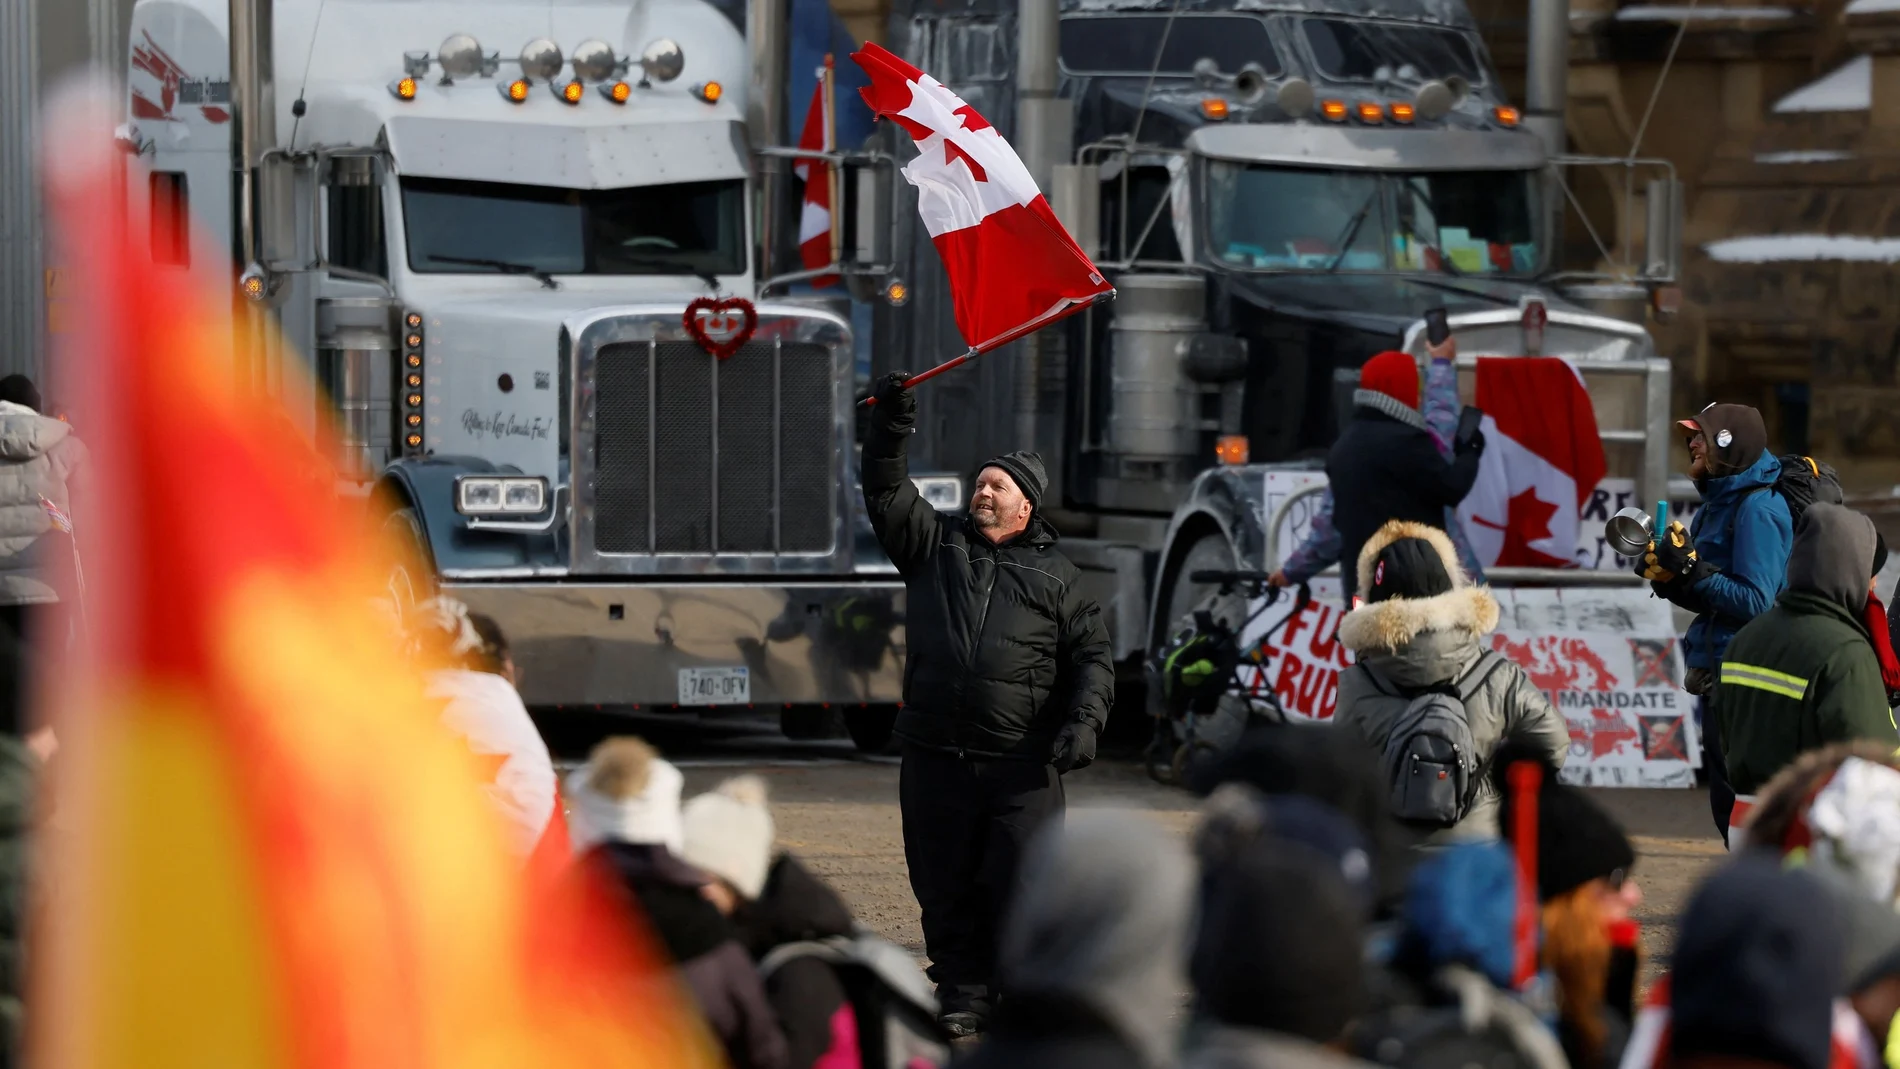 Vandalismo, banderas racistas, “símbolos de odio e intimidación”. Así ha descrito Justin Trudeau, Primer Ministro de Canadá, el ambiente de las manifestaciones antivacunas